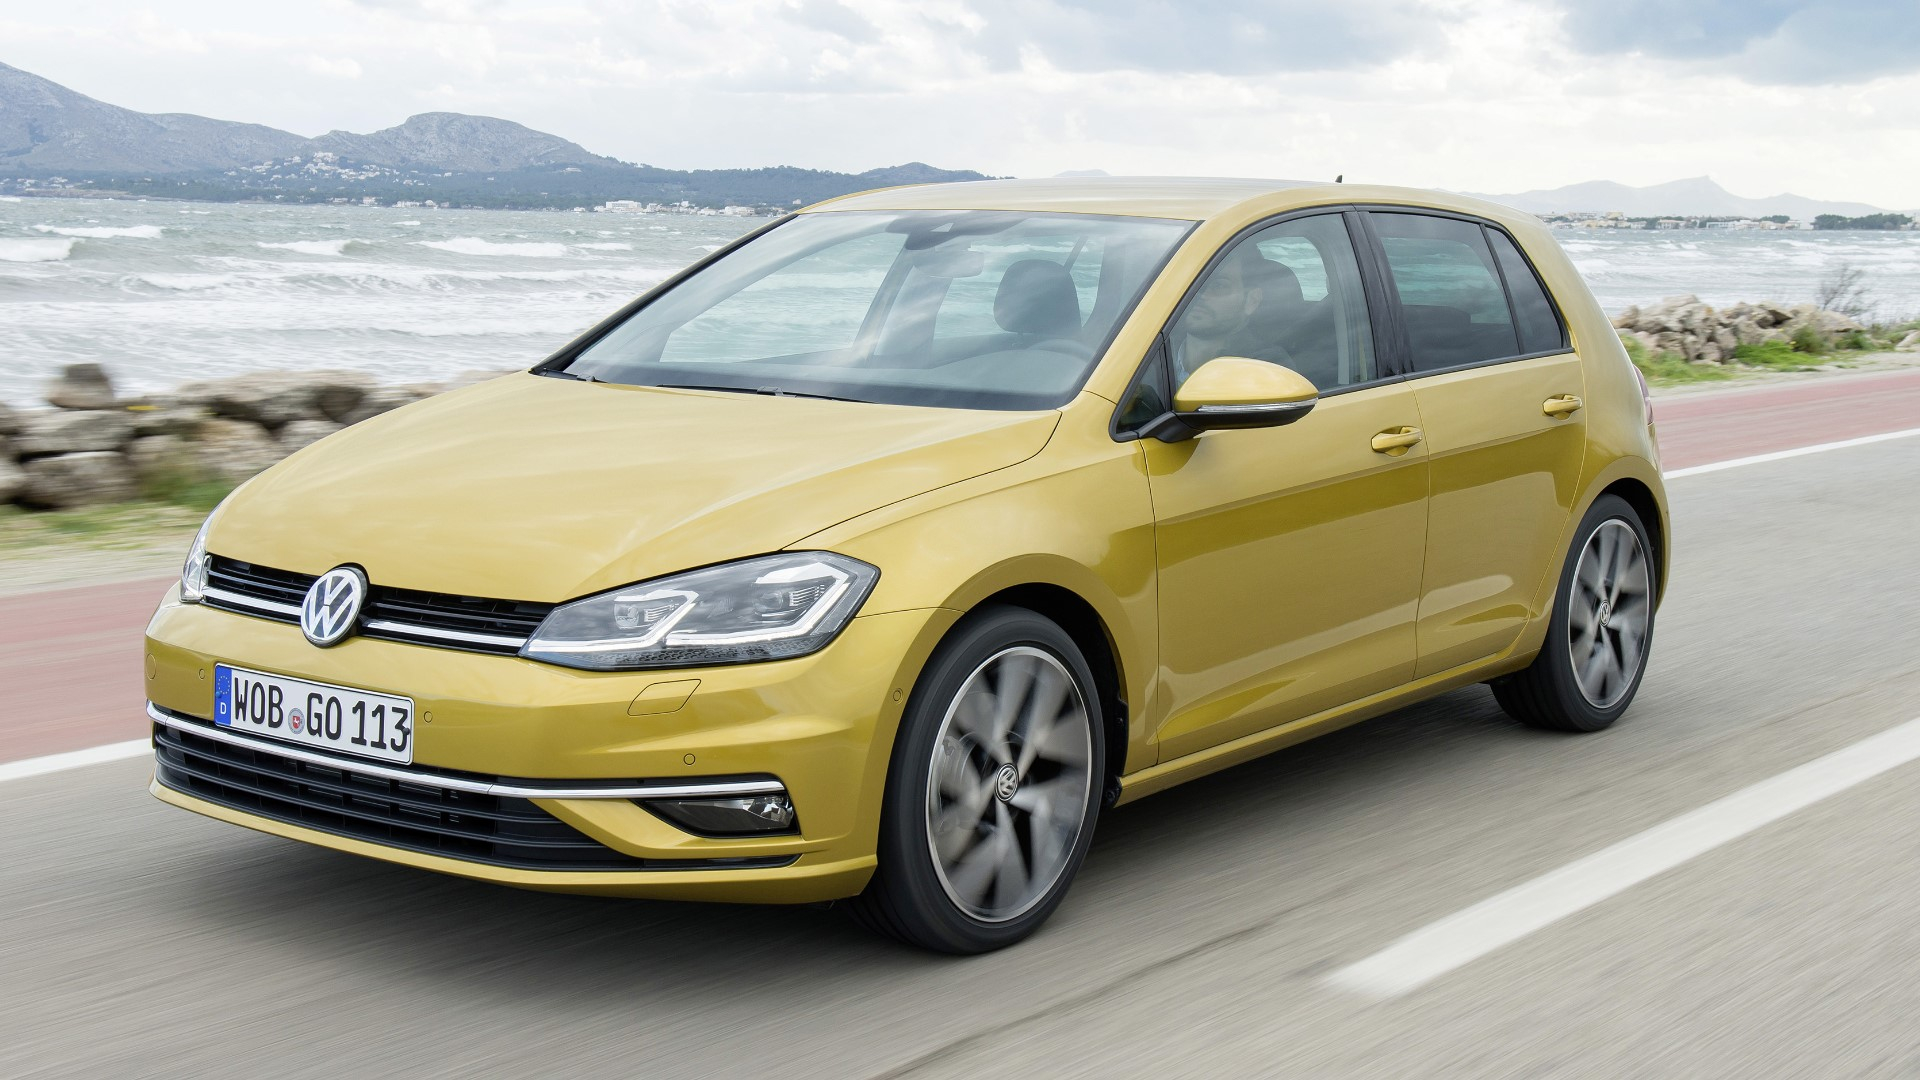 Volkswagen'de 600 Bin Lira Altında Model Artık Yok